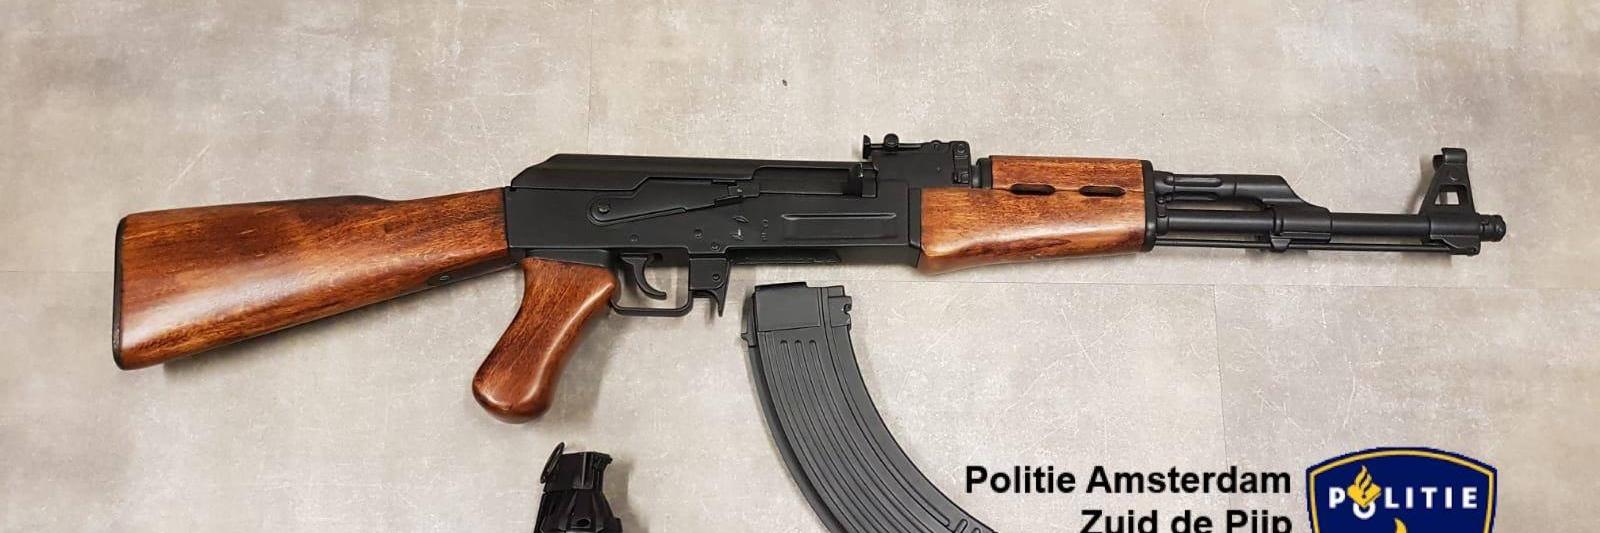 vertrekken vervorming gebroken Man probeert onklaar gemaakt geweer te verkopen in Amsterdam - NH Nieuws